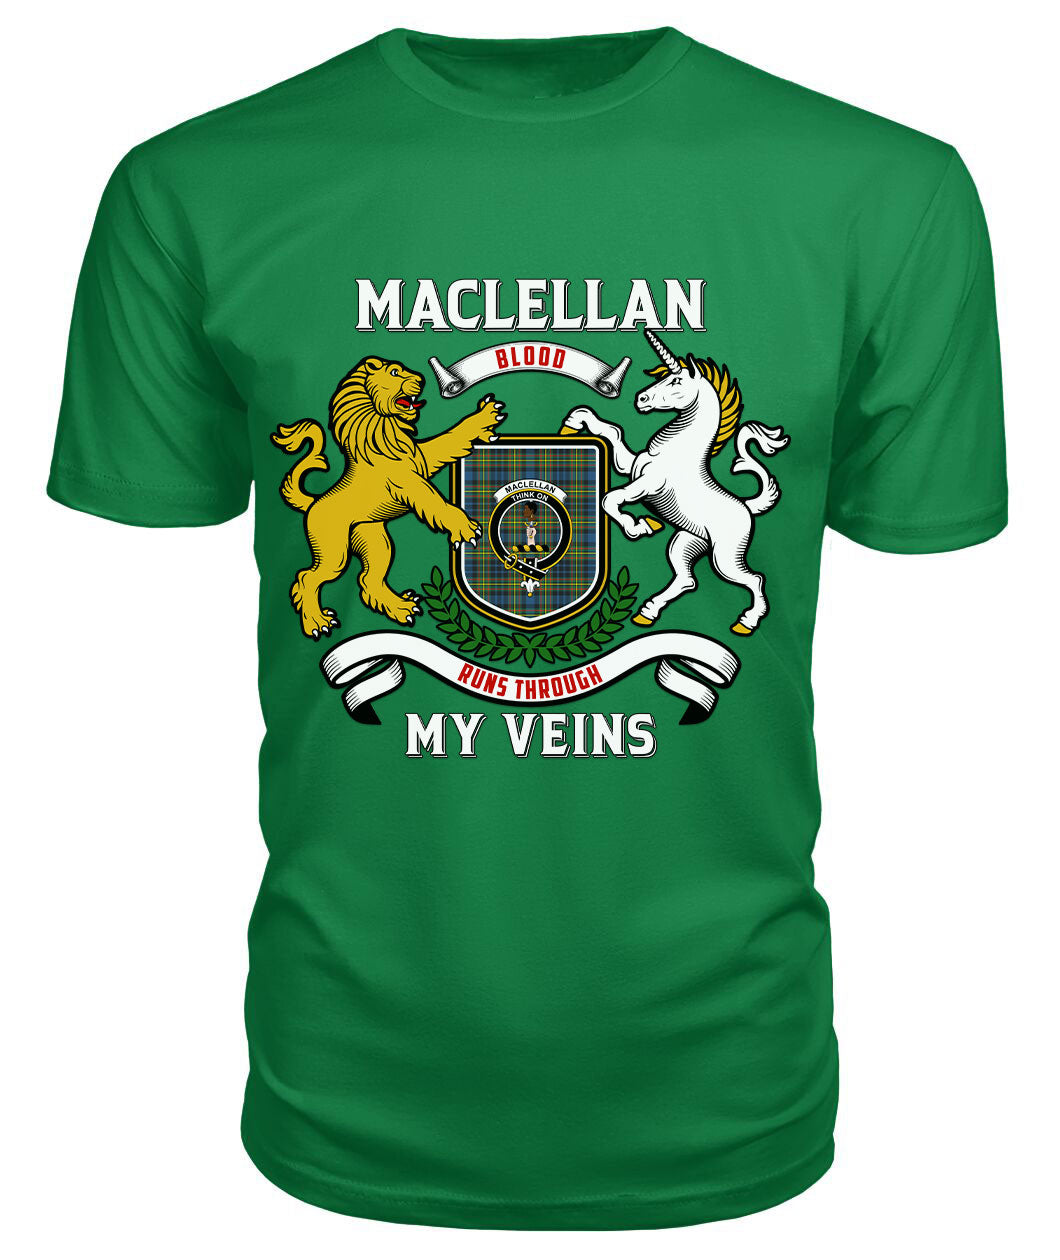 MacLellan Ancient Tartan Crest 2D T-shirt - Blood Runs Through My Veins Style